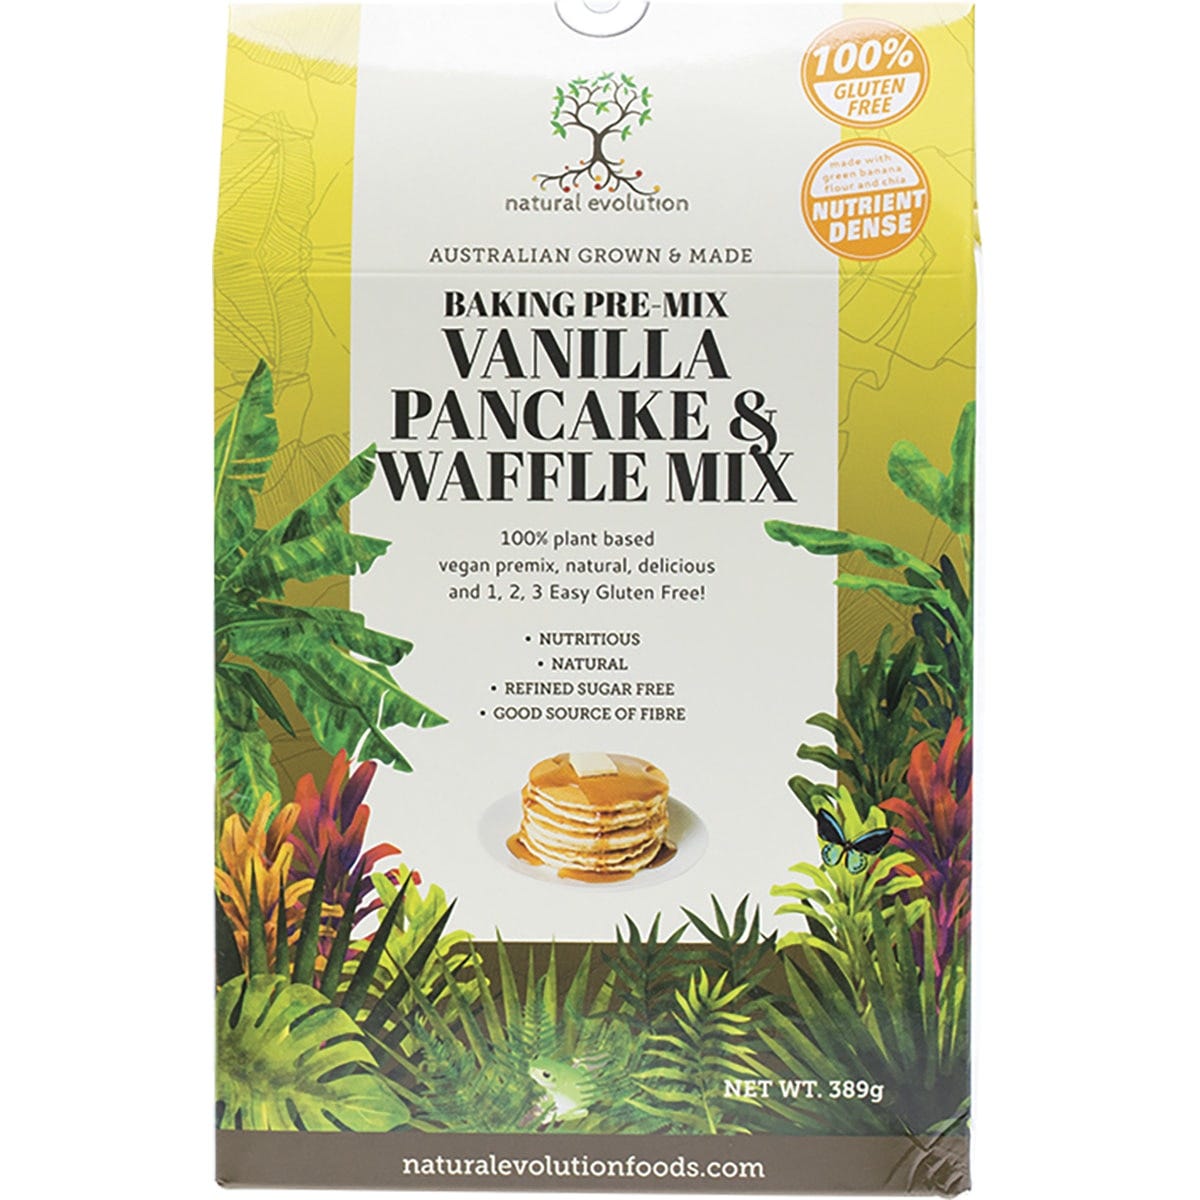 Natural Evolution Vanilla Pancake & Waffle Mix 389g - Dr Earth - Baking